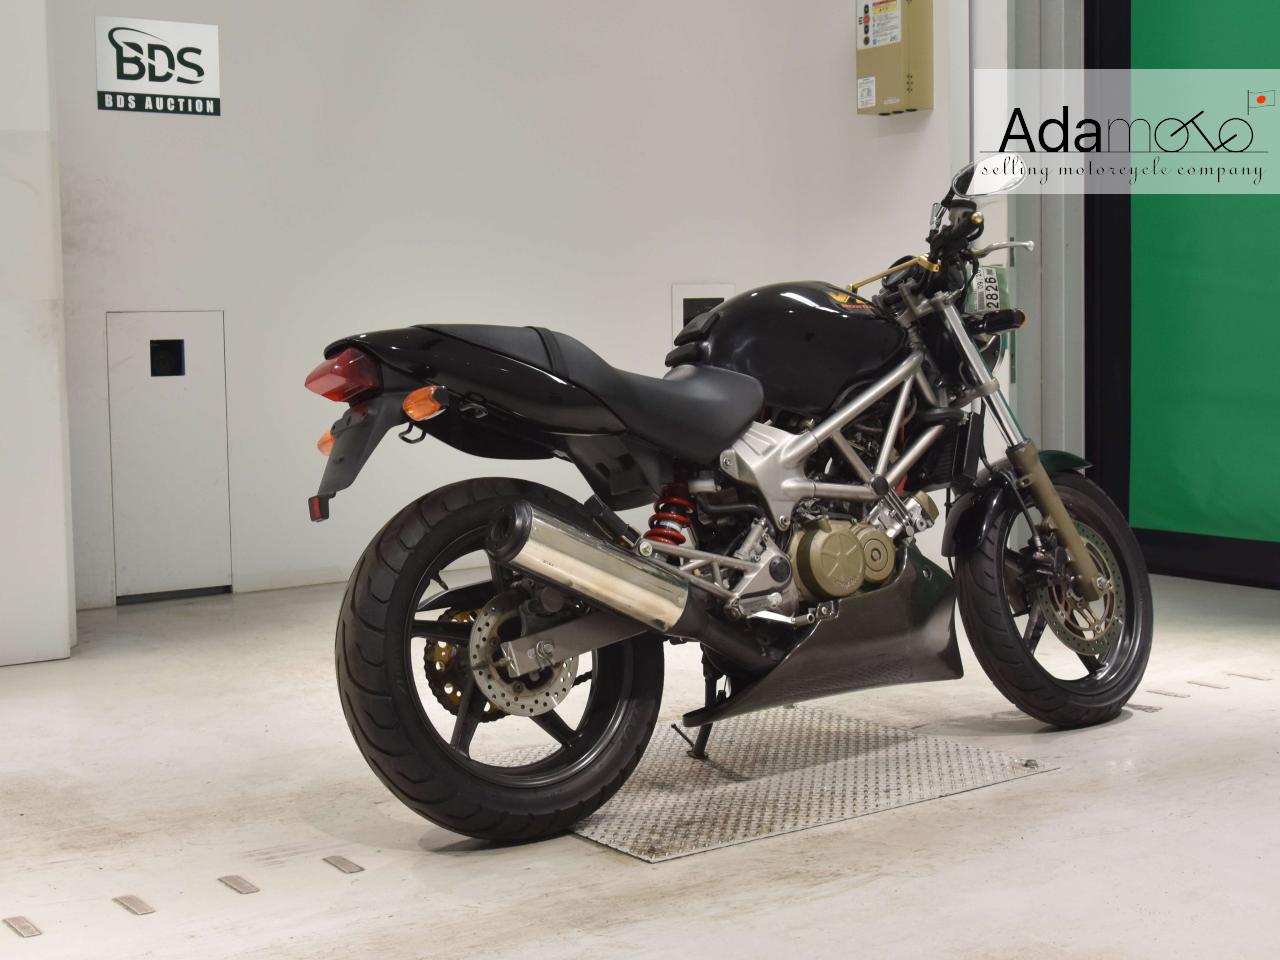 Honda VTR250 - Adamoto - Motorcycles from Japan